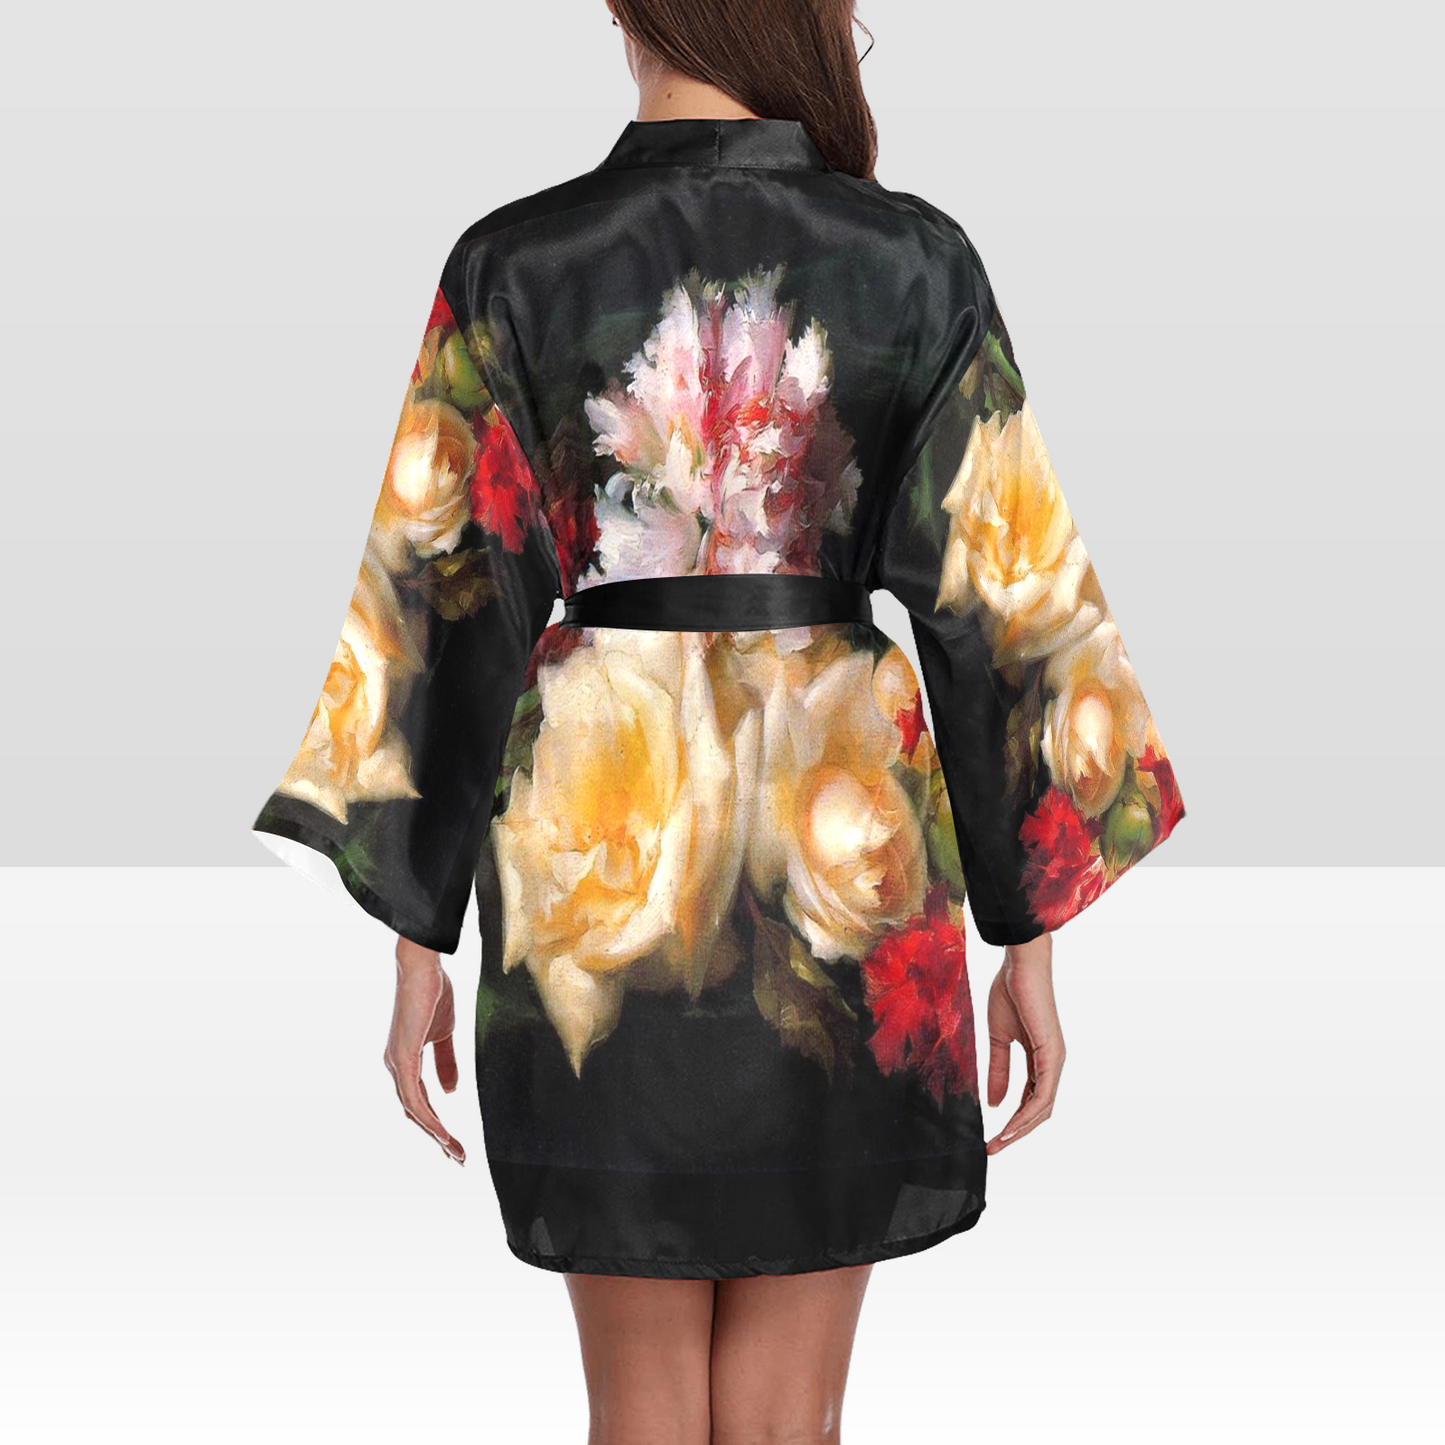 Vintage Floral Kimono Robe, Black or White Trim, Sizes XS to 2XL, Design 30